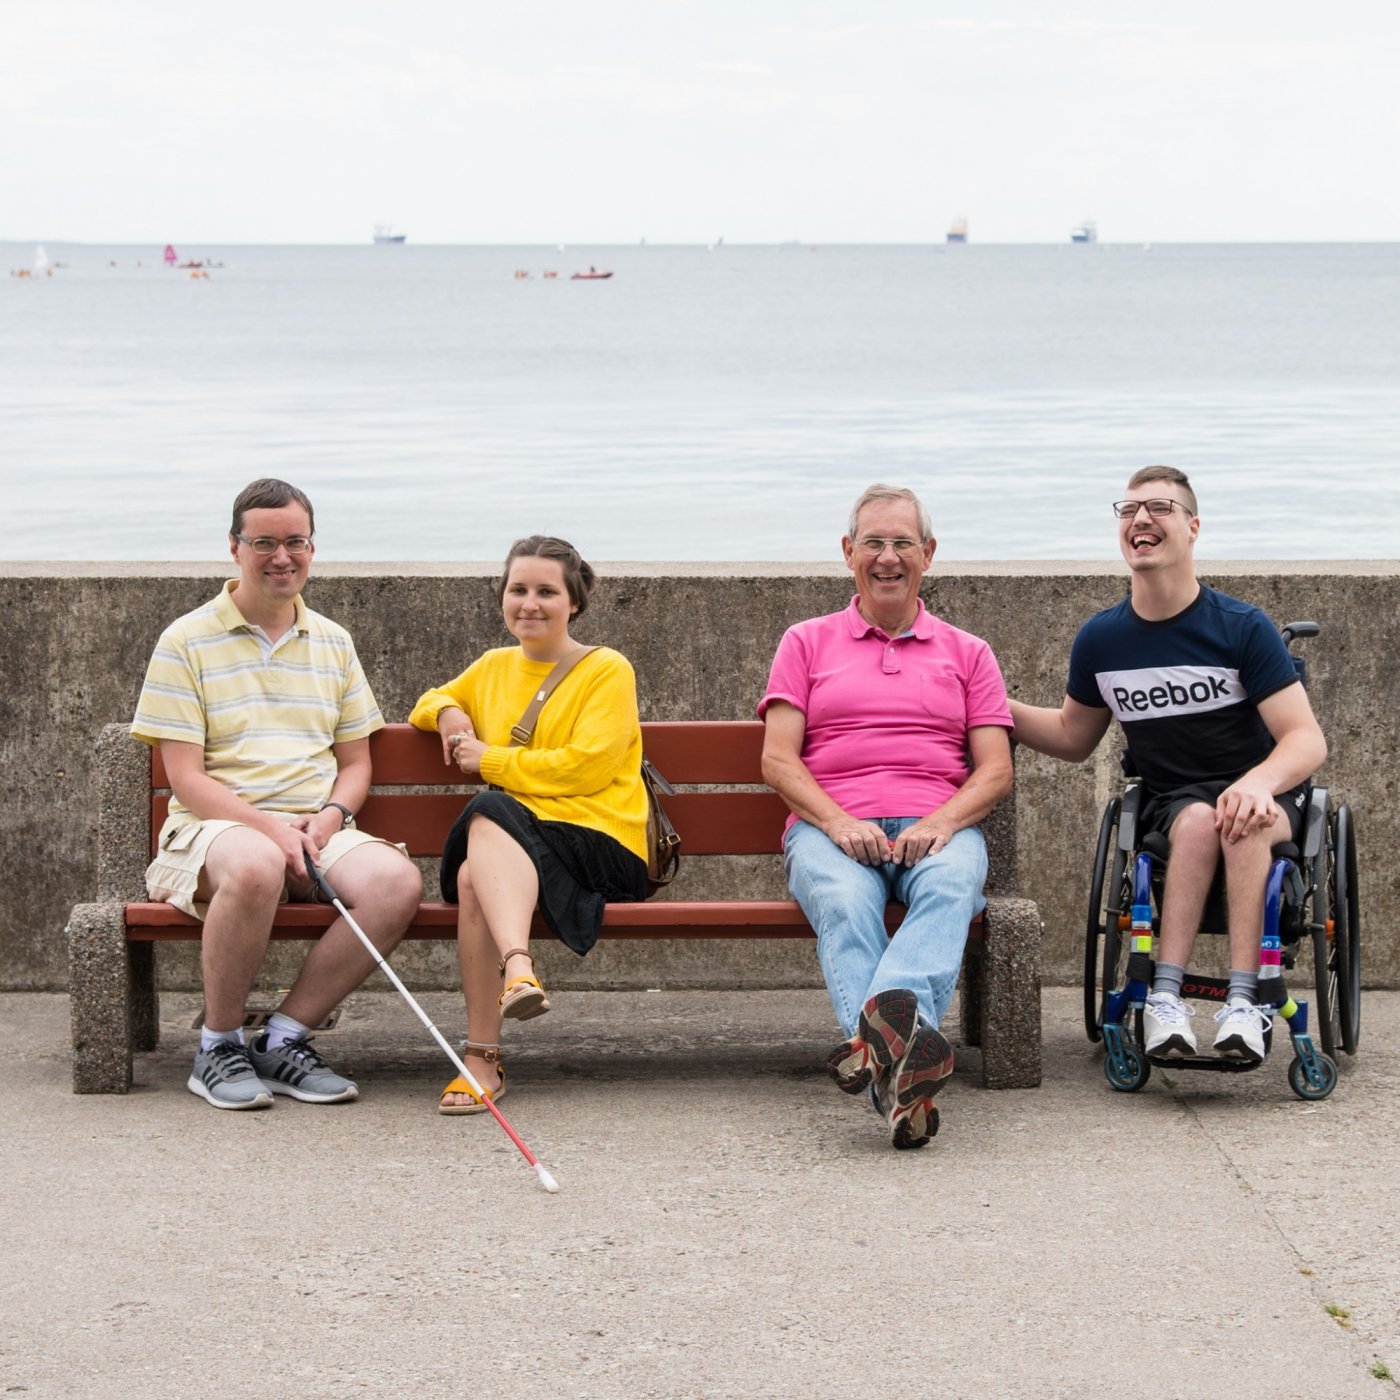 4 uśmiechnięte osoby siedzą na ławce na bulwarze.
W tym osoba poruszająca się na wózku,niewidoma i dwóch wolontariuszy.